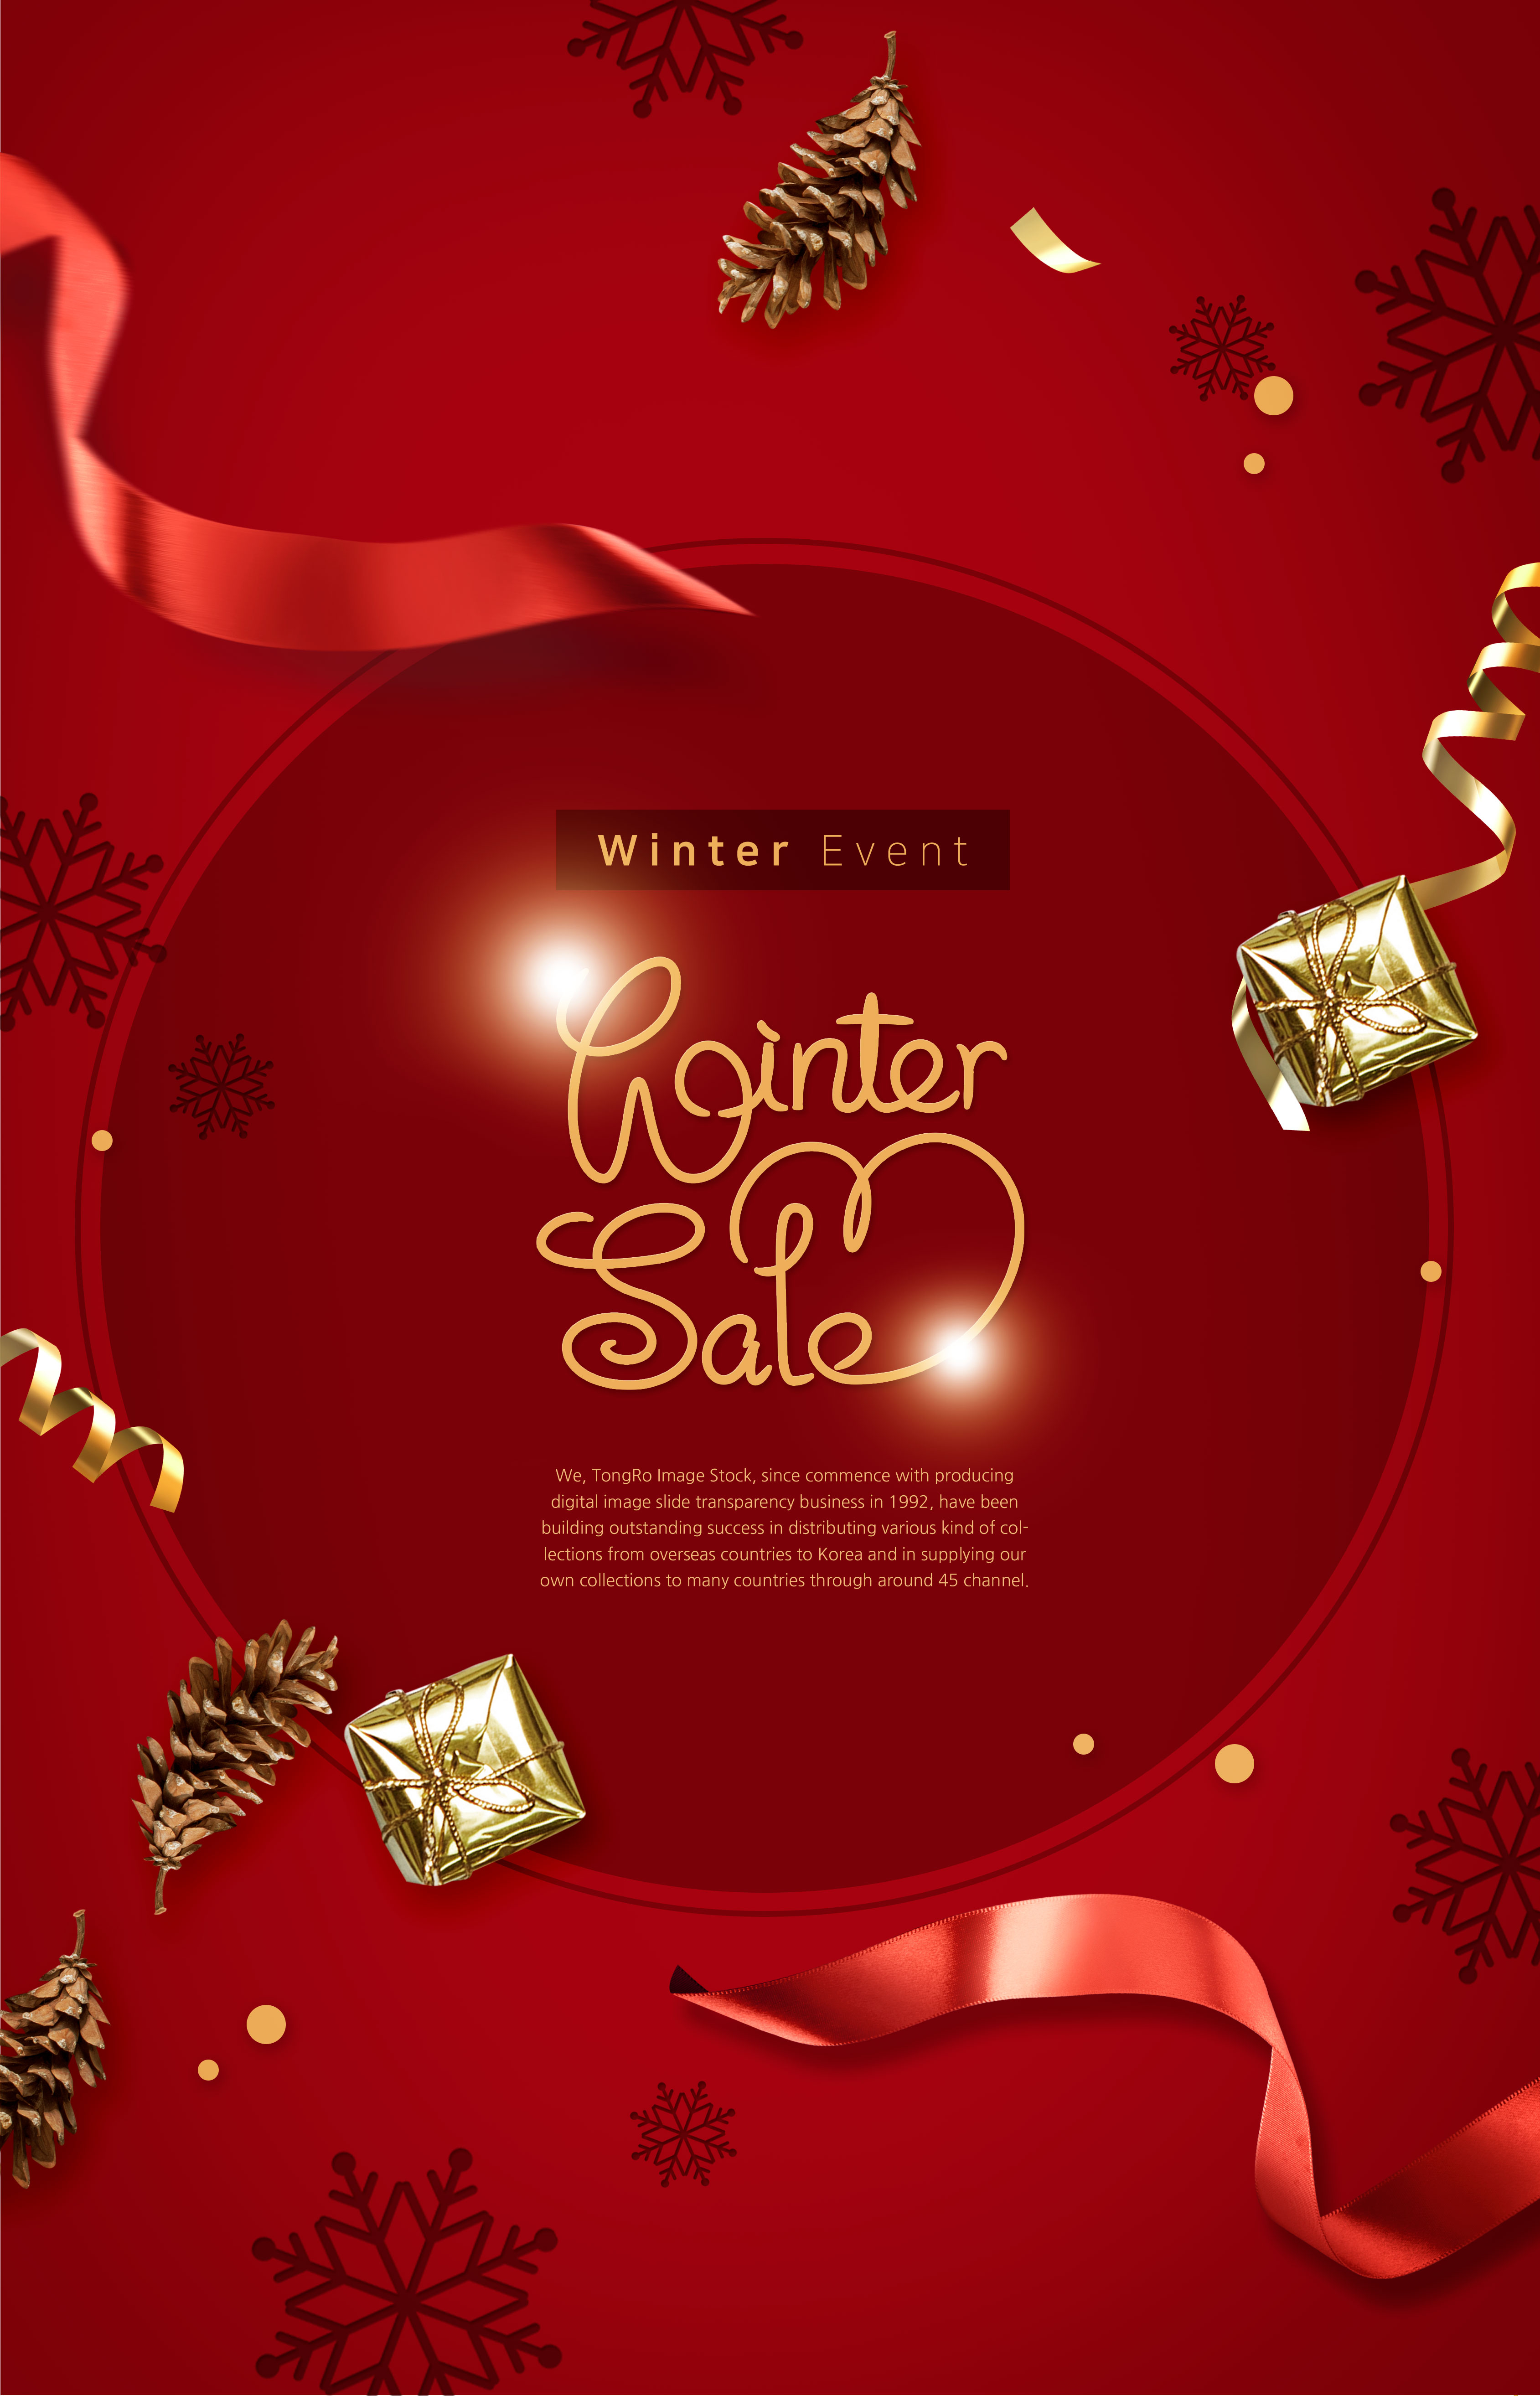 酒红色主题冬季购物活动促销广告海报模板插图